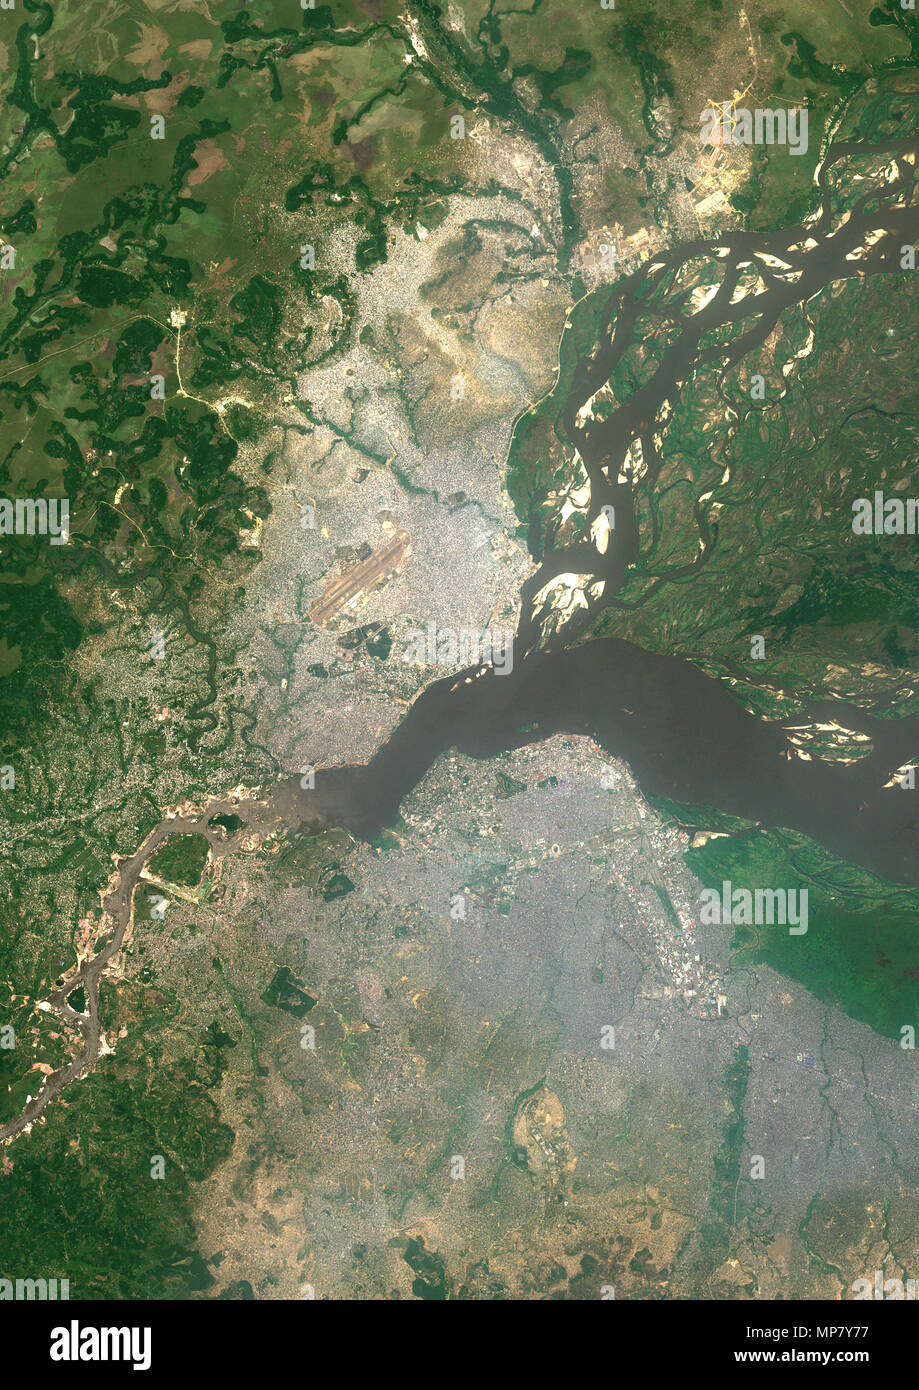 Kinshasa and Brazzaville, Africa Stock Photo